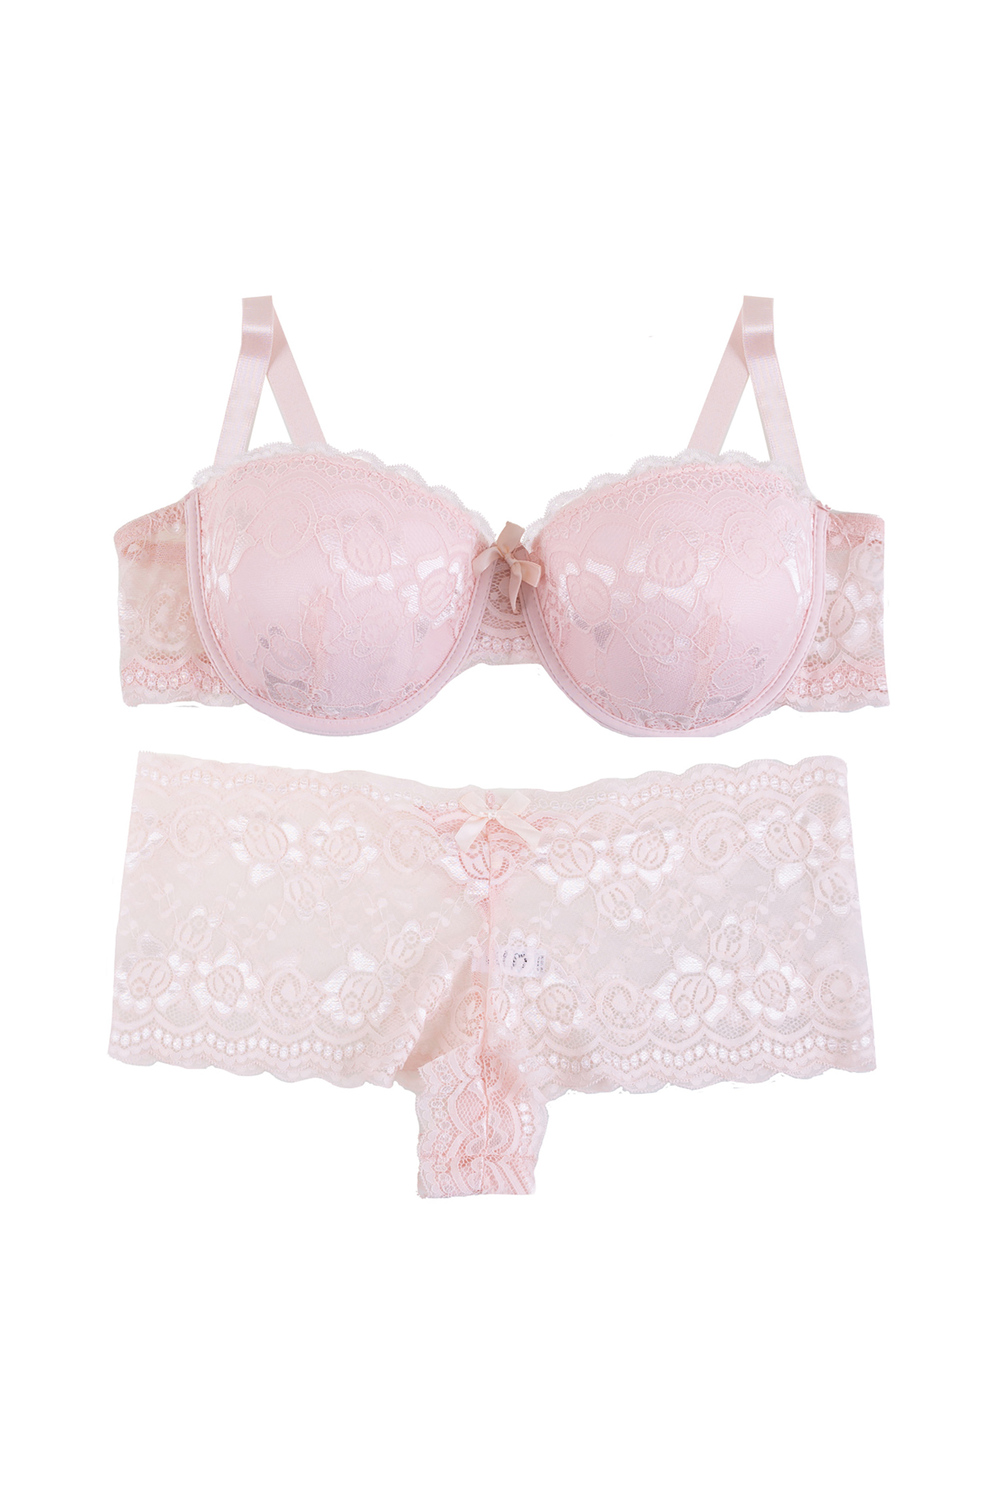 Plunging lace push-up demi bra set, blush - Plus Size. Colour: light pink.  Size: 40c/8